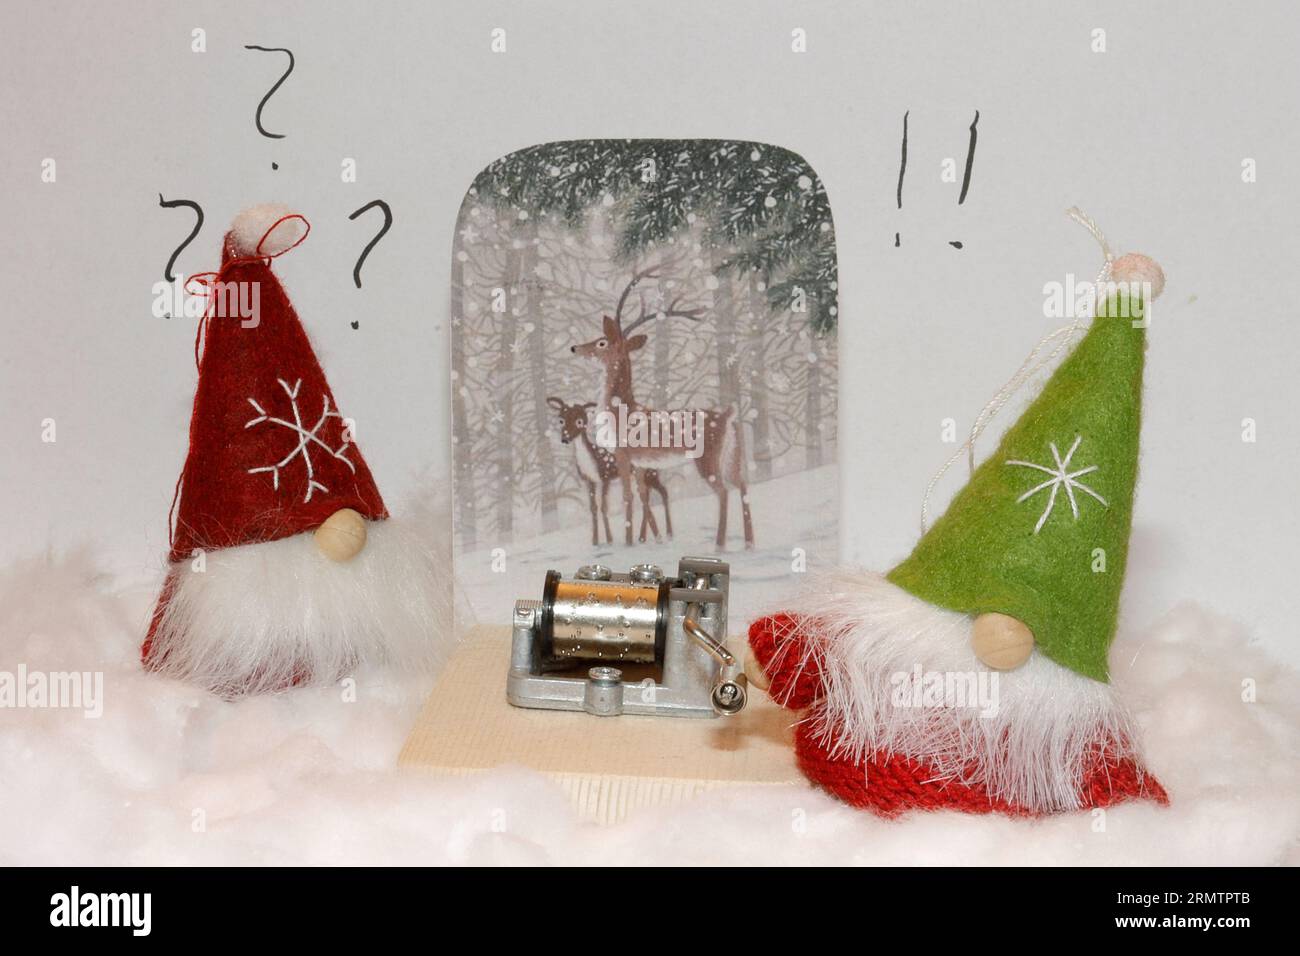 Deux elfes de noël trouvent un carillon sur la neige, celui de droite essaie de le faire tourner. Style ludique, neige faite de coton. Banque D'Images